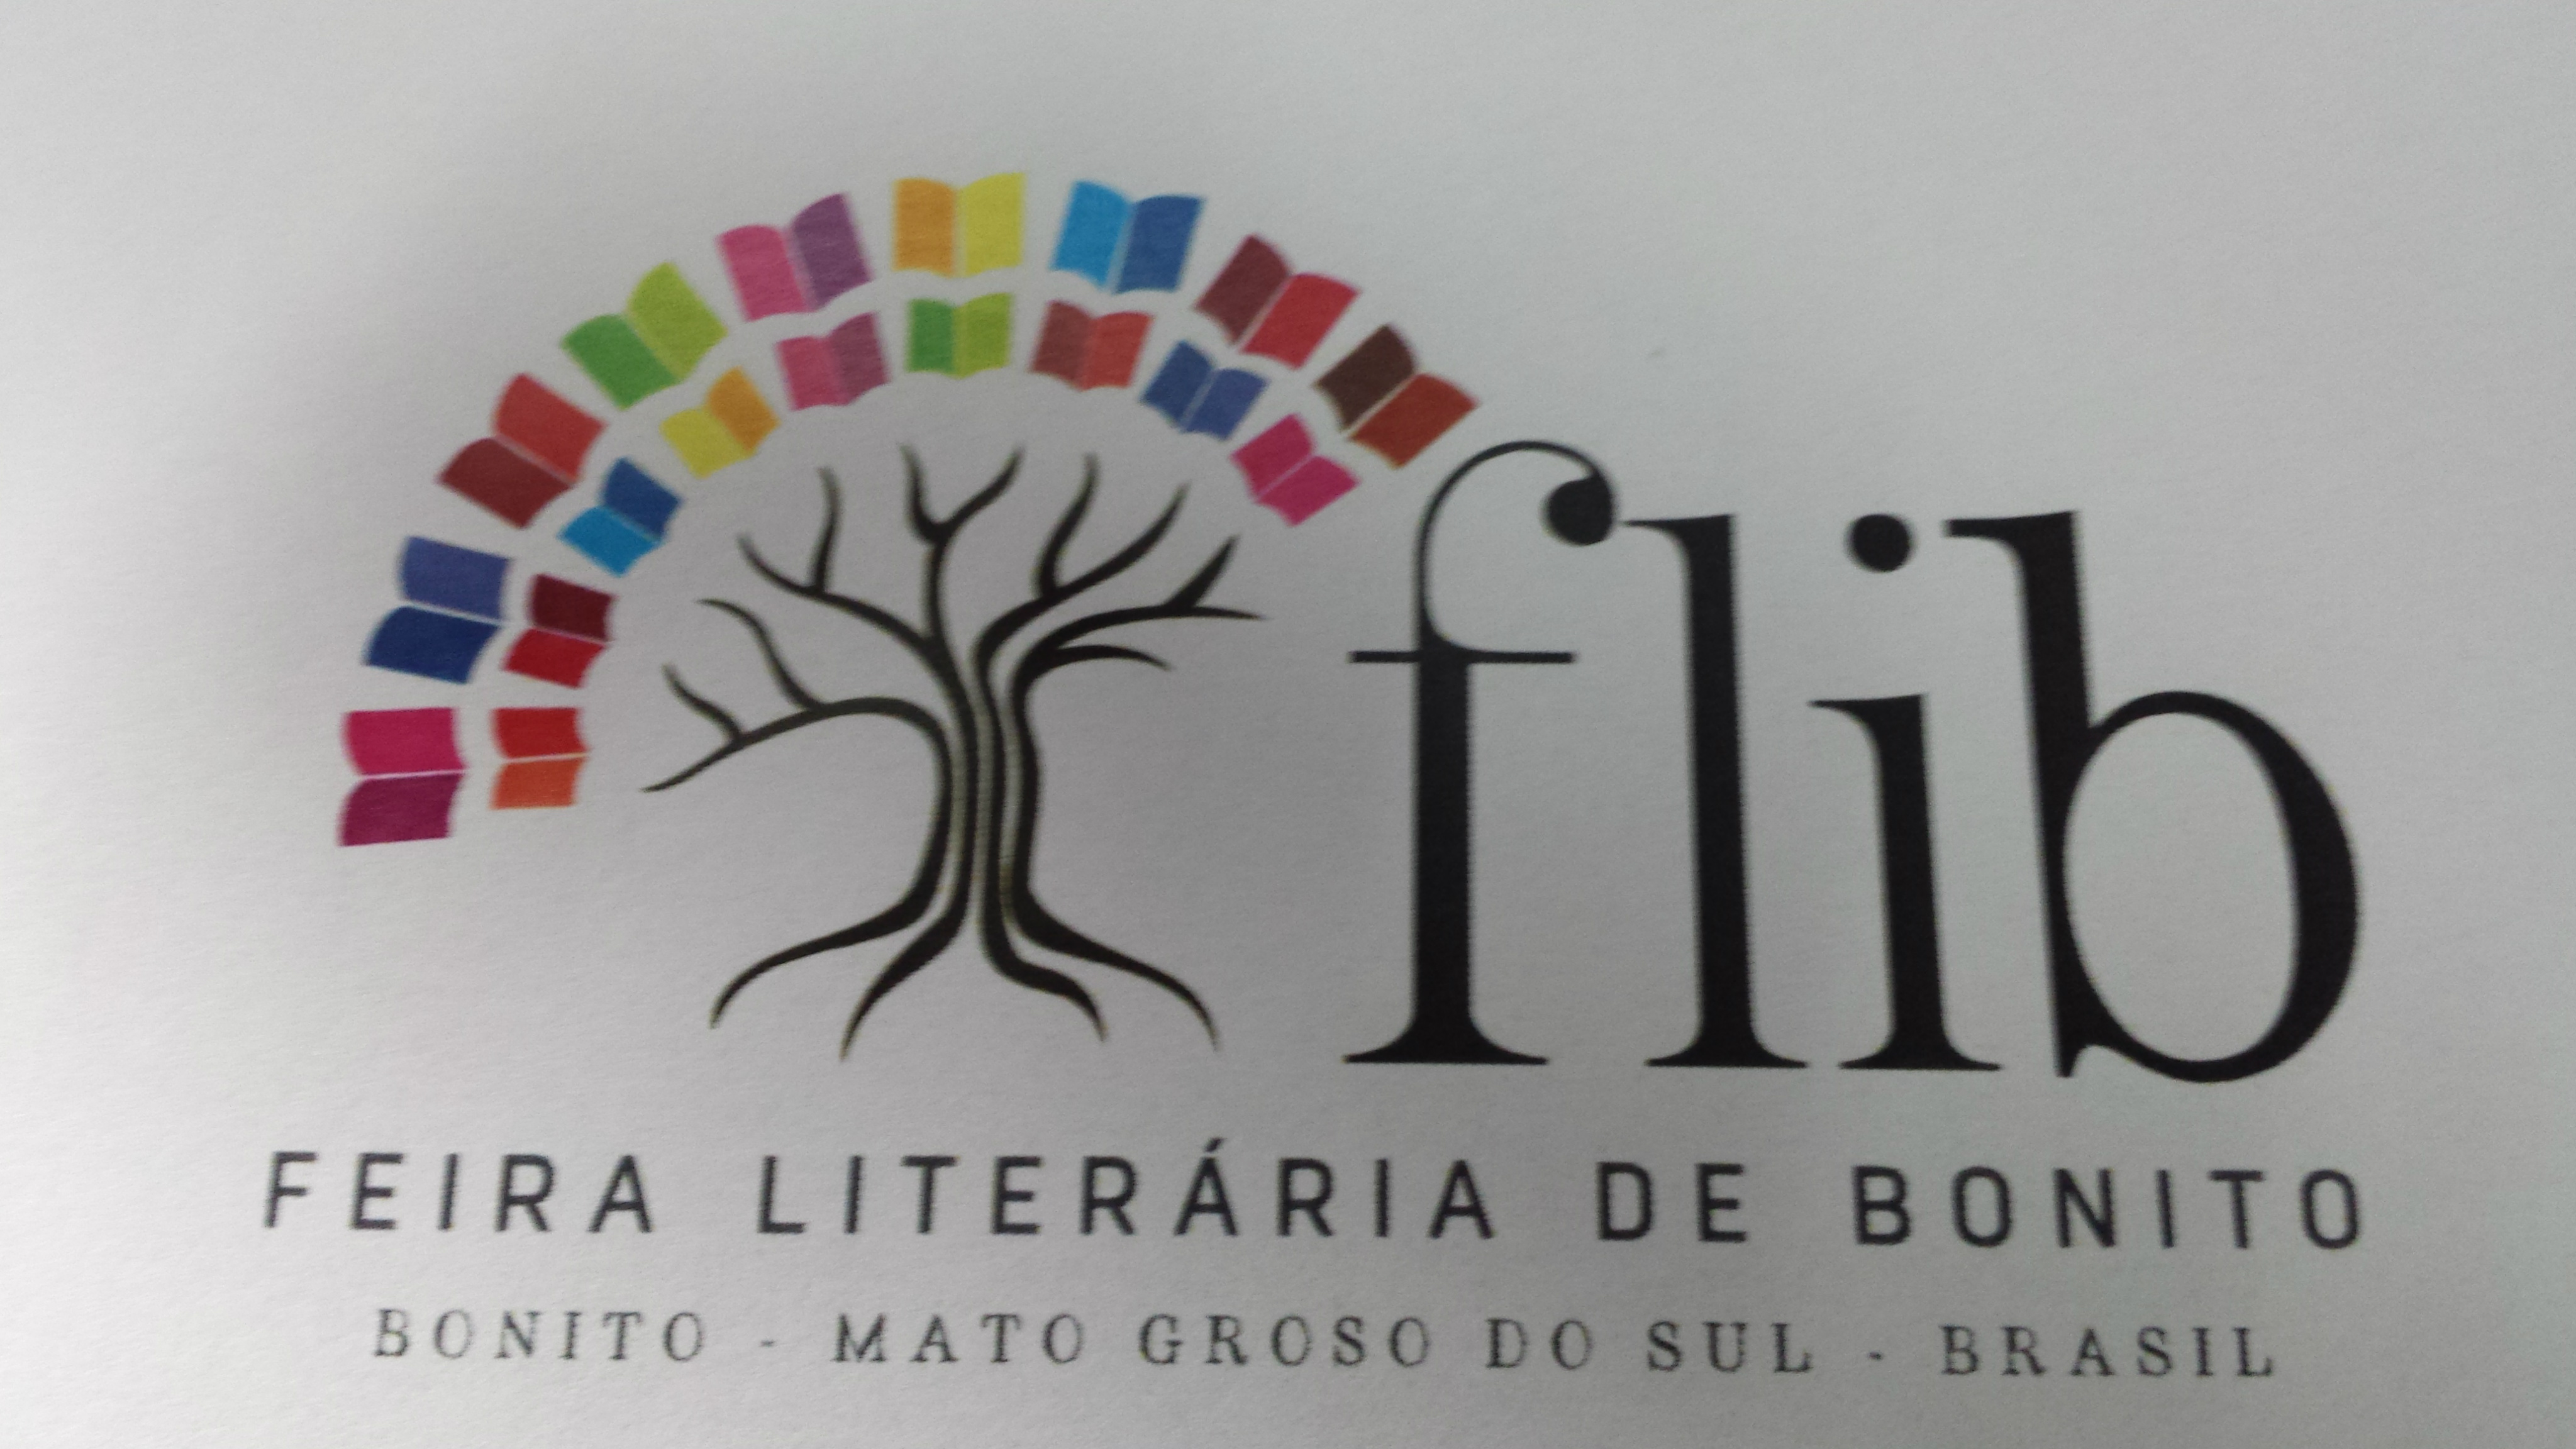 Começa hoje a Feira Literária de Bonito “Flib”.